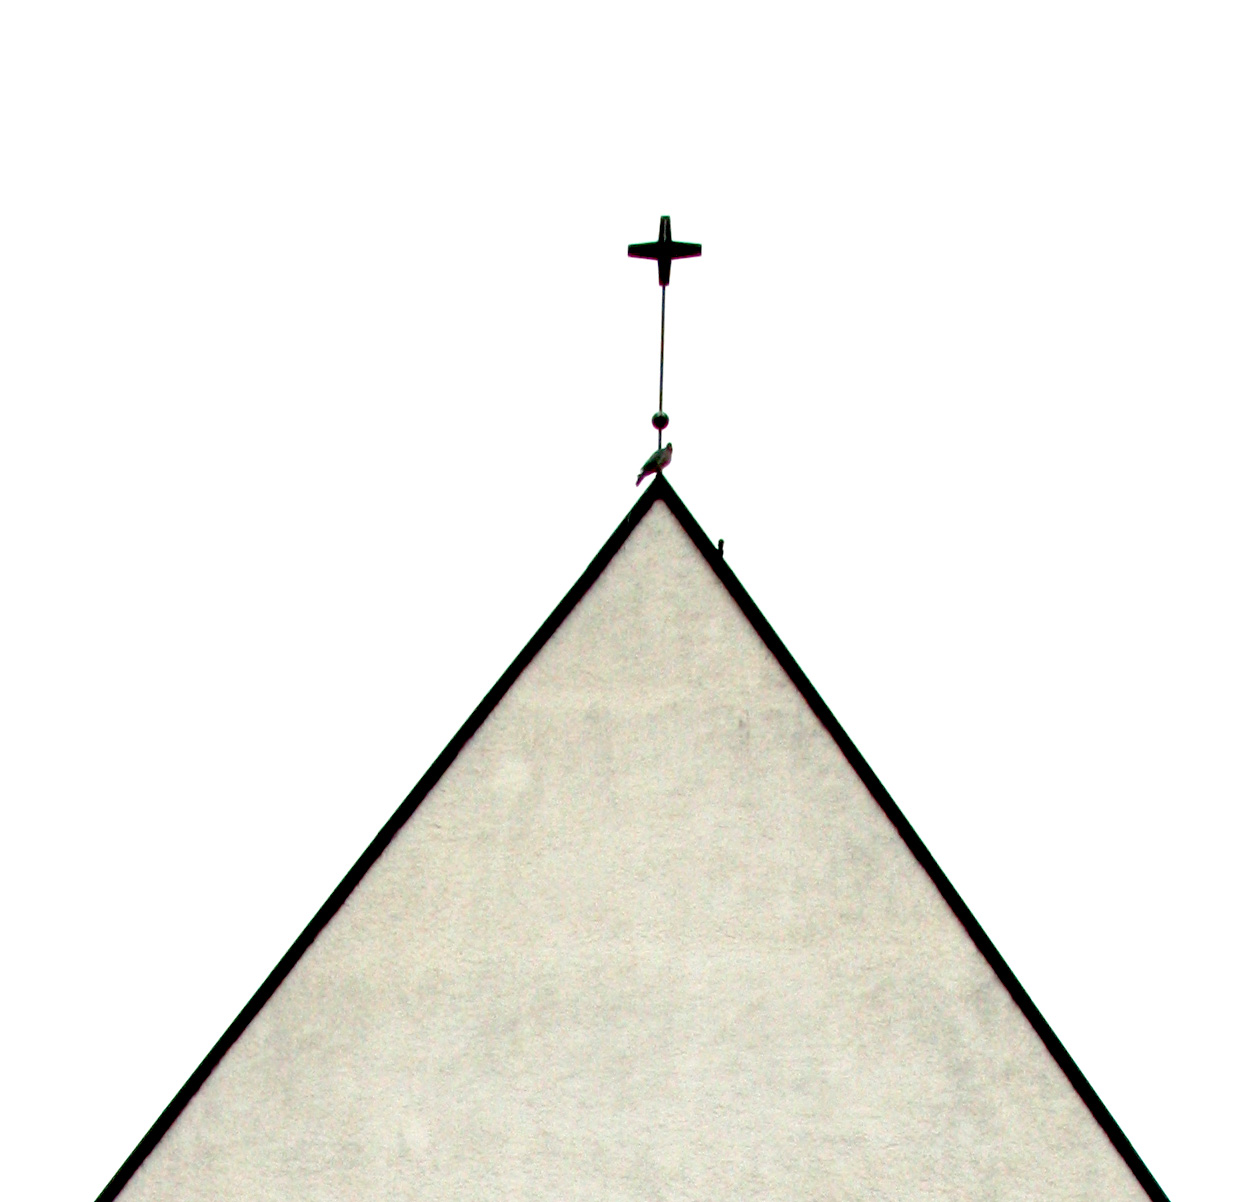 vit, putsad kyrkgavel med kors